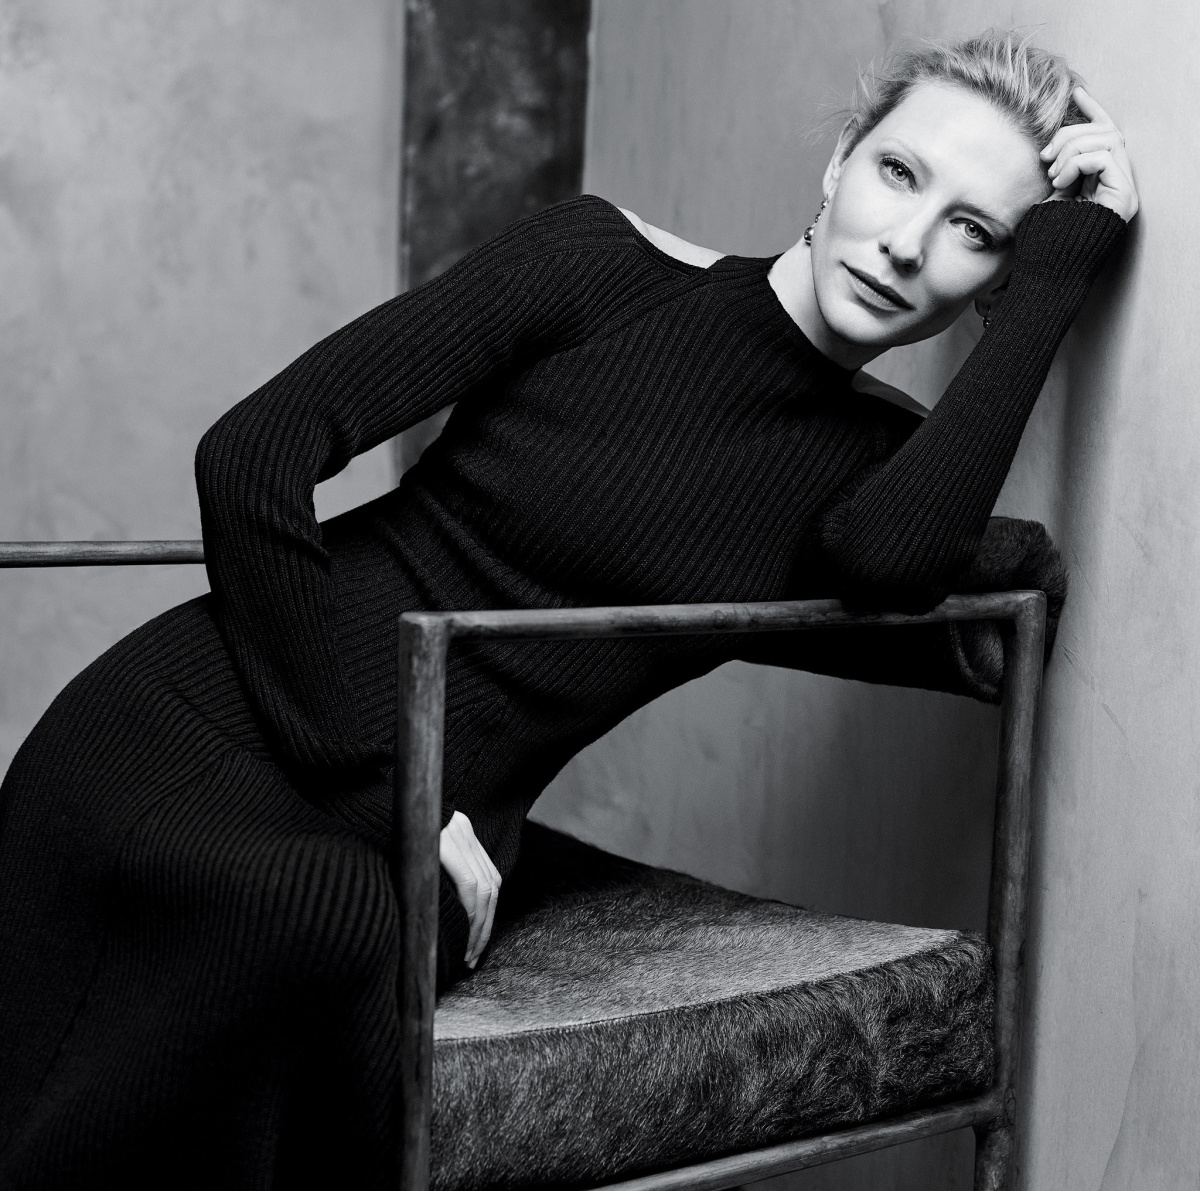 # 女性魅力和演技都點滿的她，帥起來卻又比好萊塢男性更帥：從穿衣到人生哲學都值得敬佩的 Cate Blanchett 1